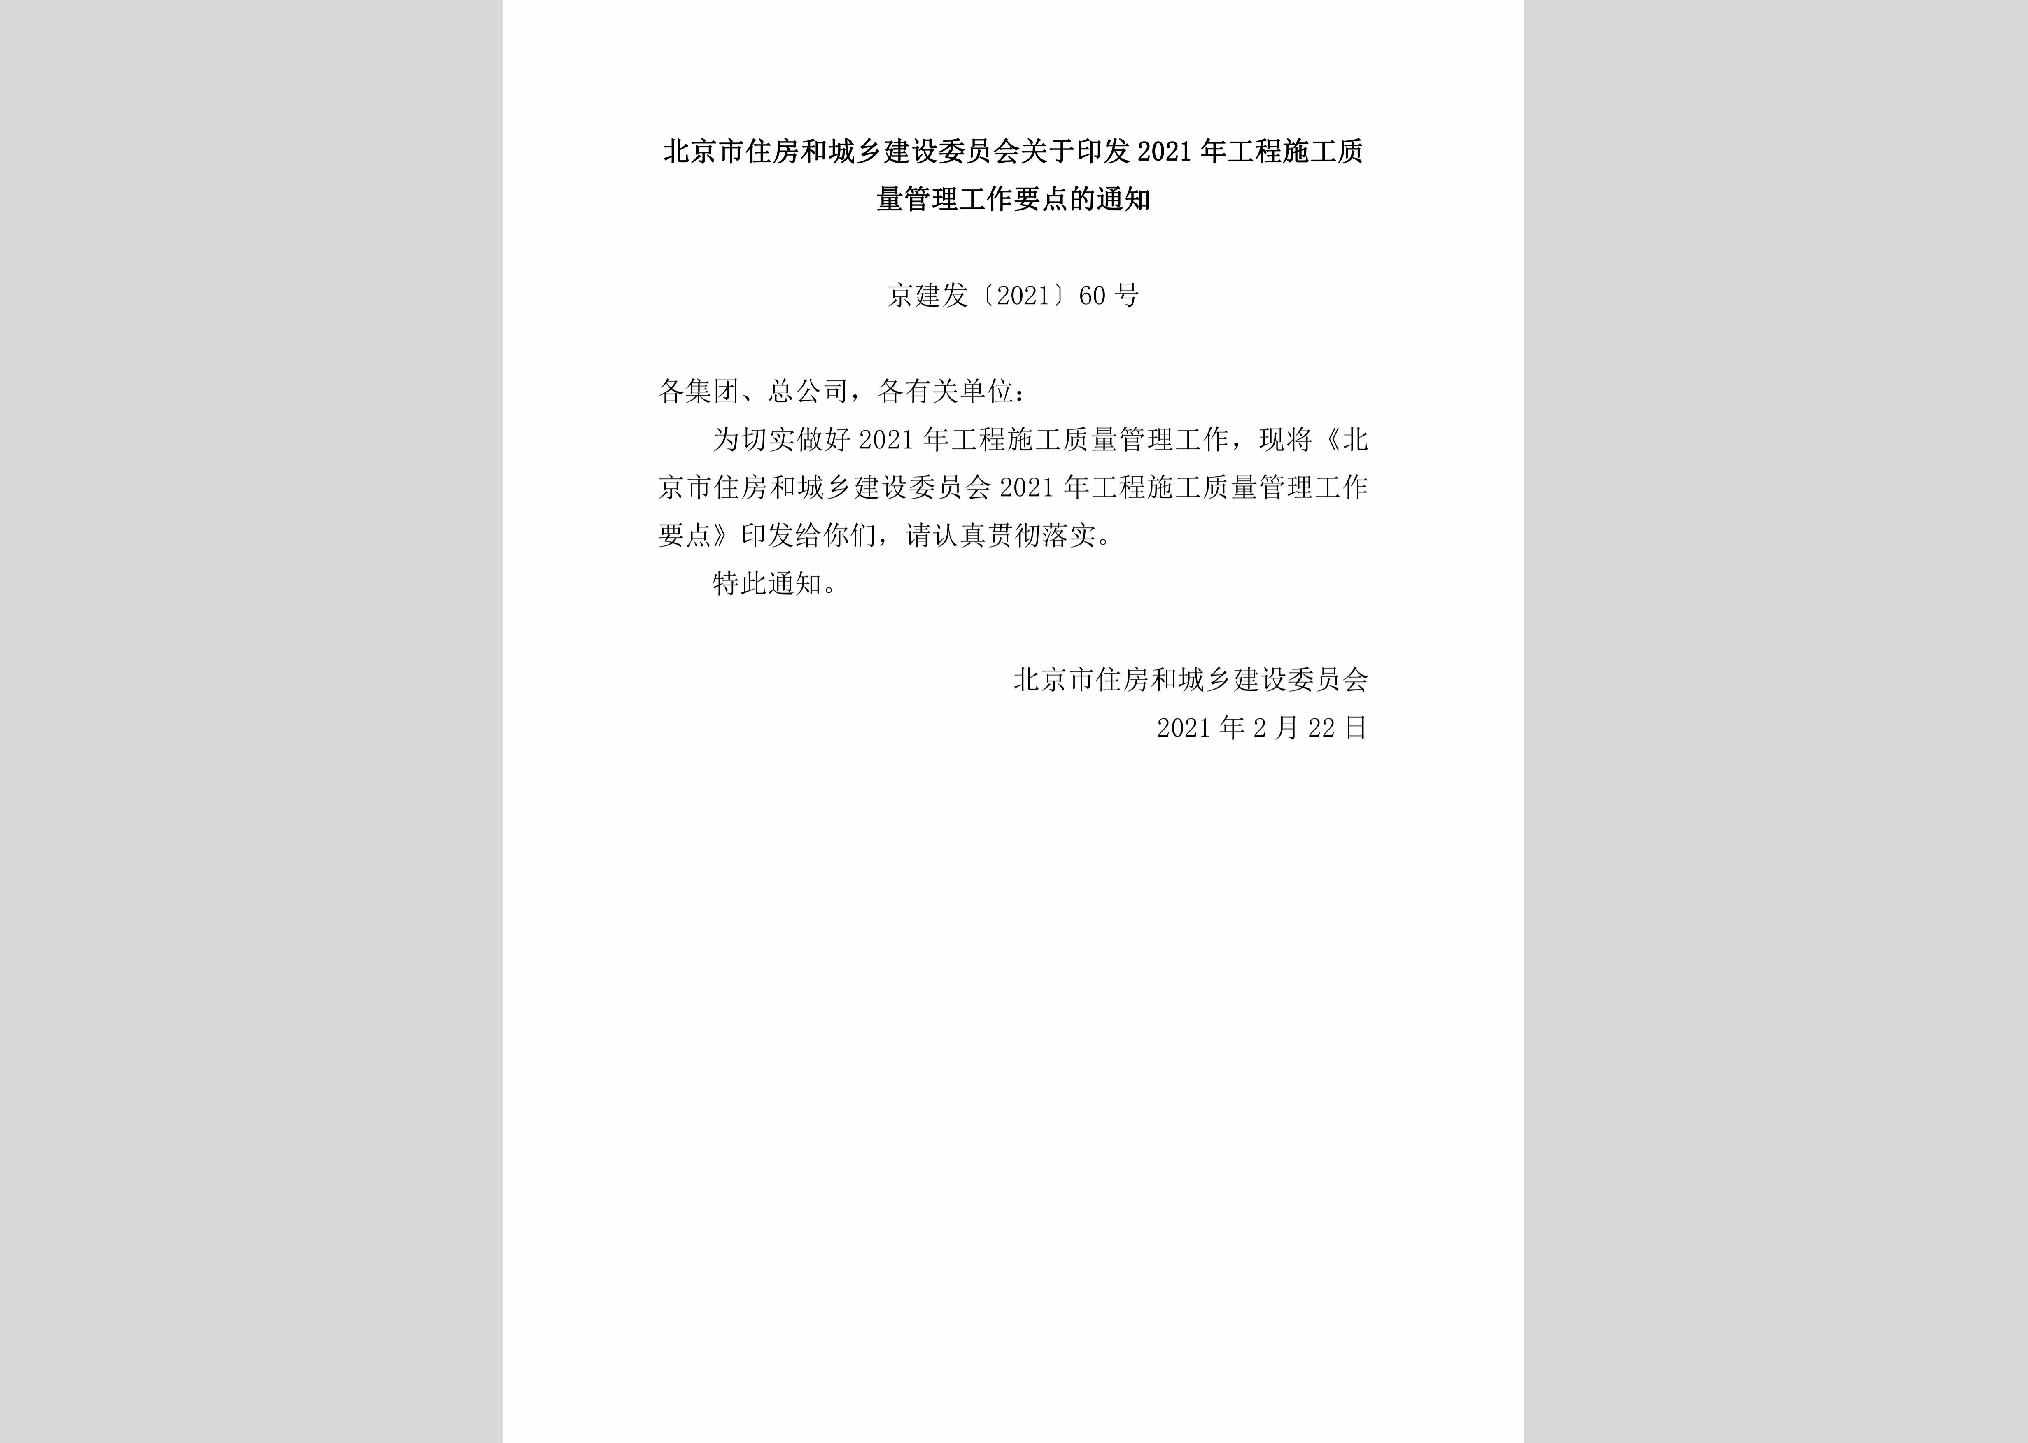 京建发[2021]60号：北京市住房和城乡建设委员会关于印发2021年工程施工质量管理工作要点的通知